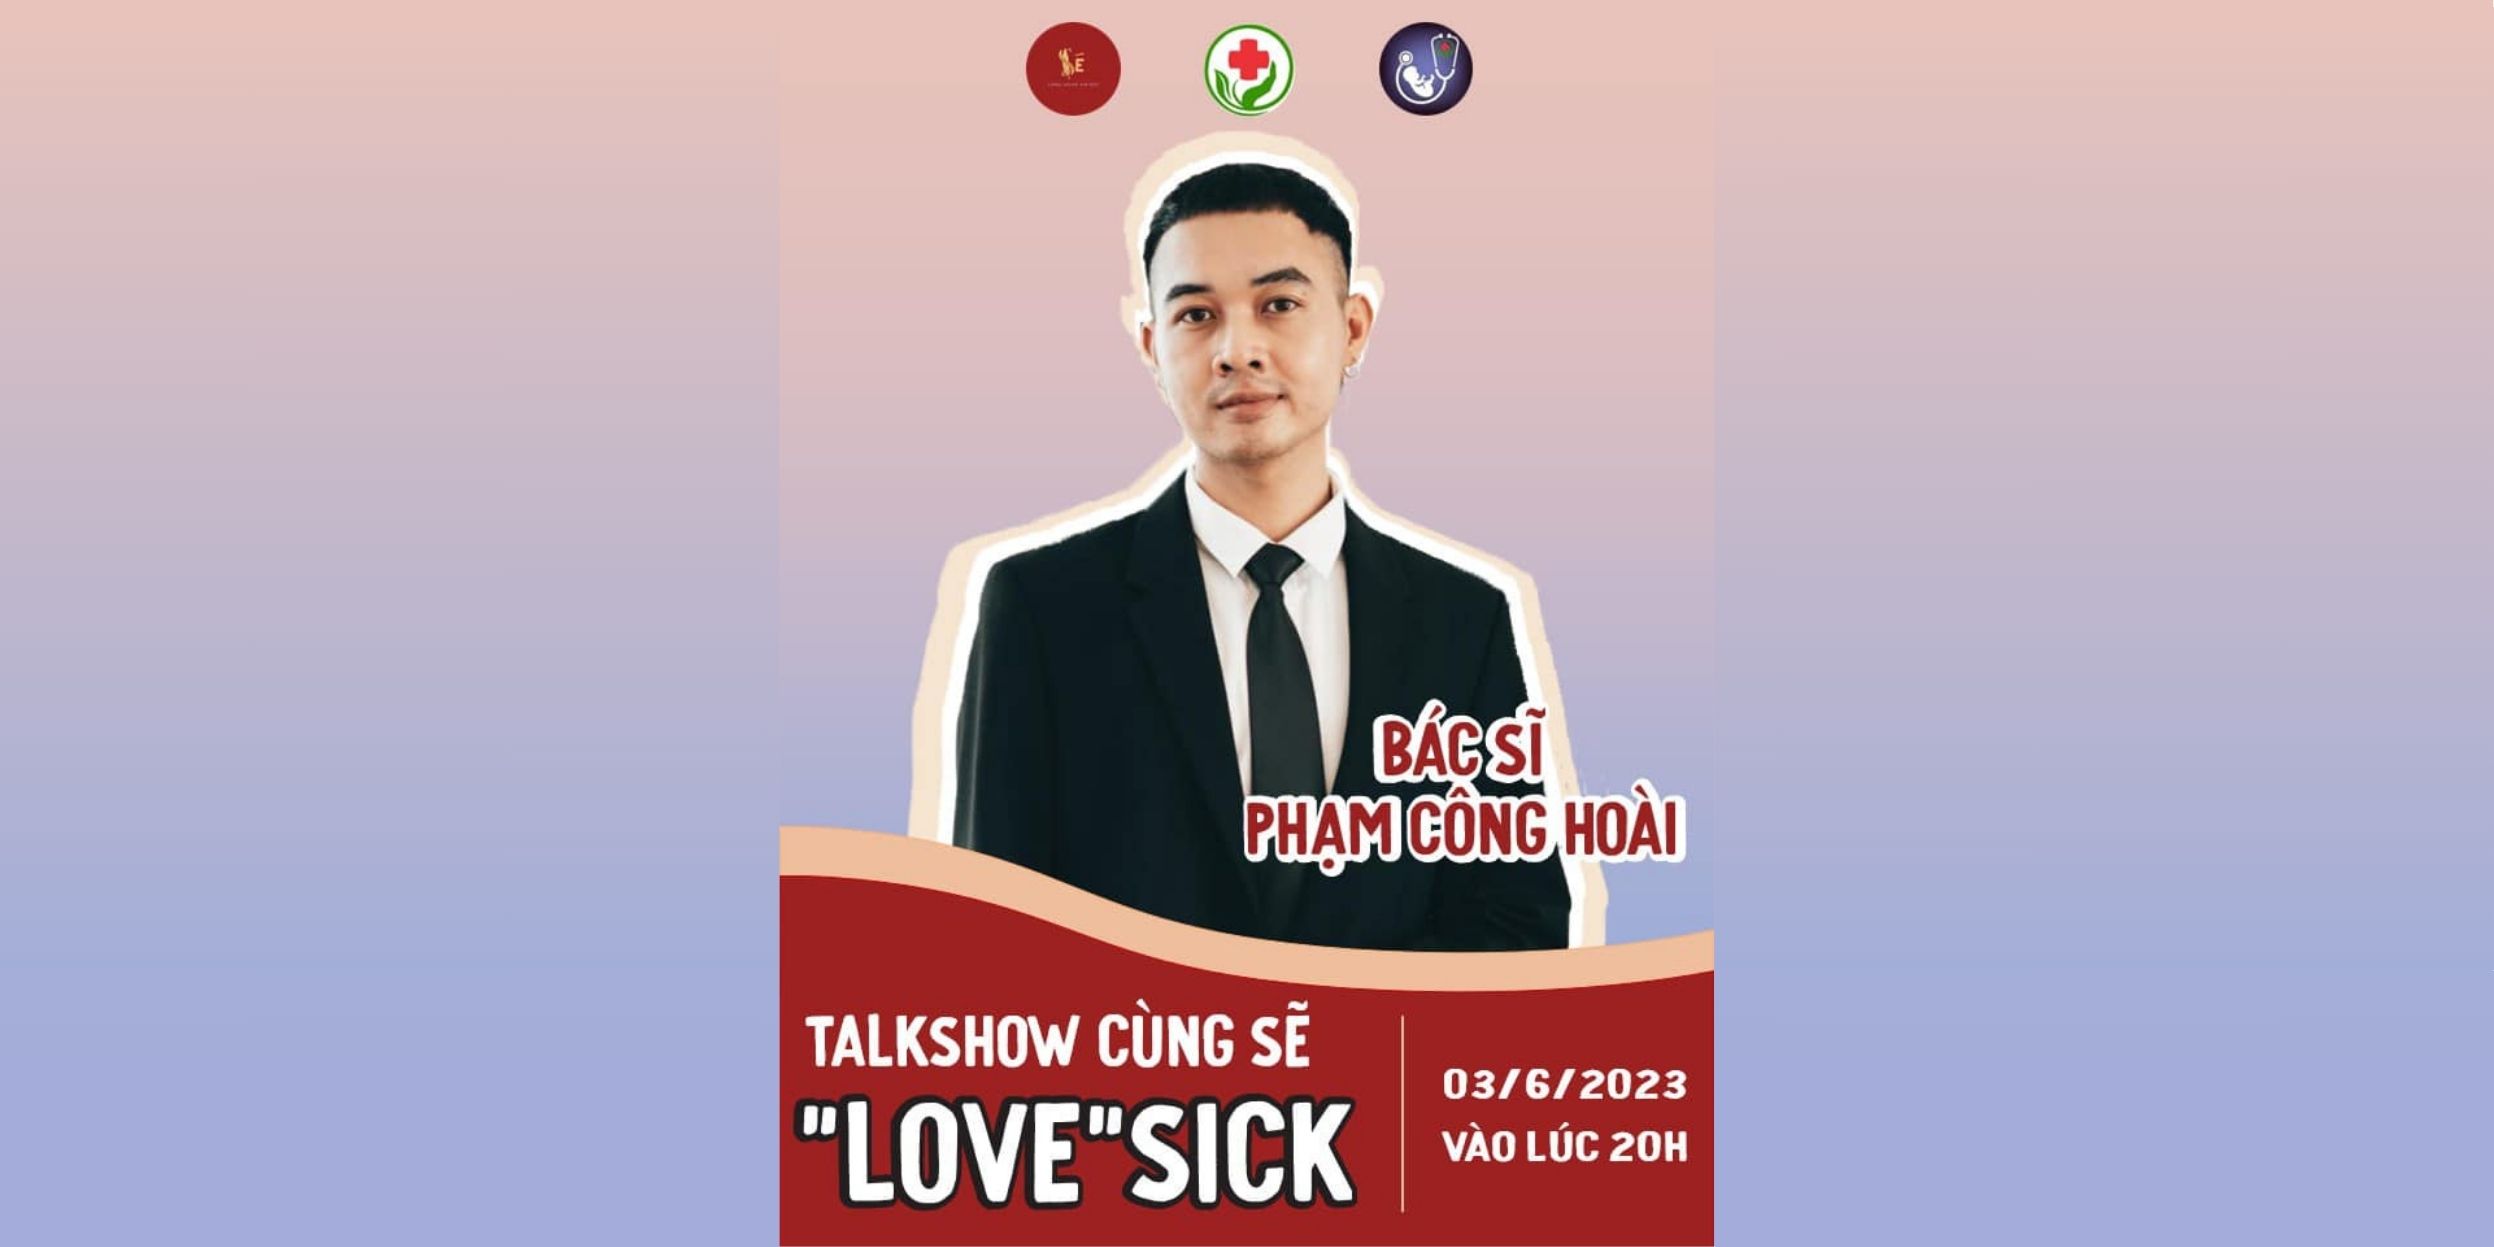 Talkshow “LOVE”SICK